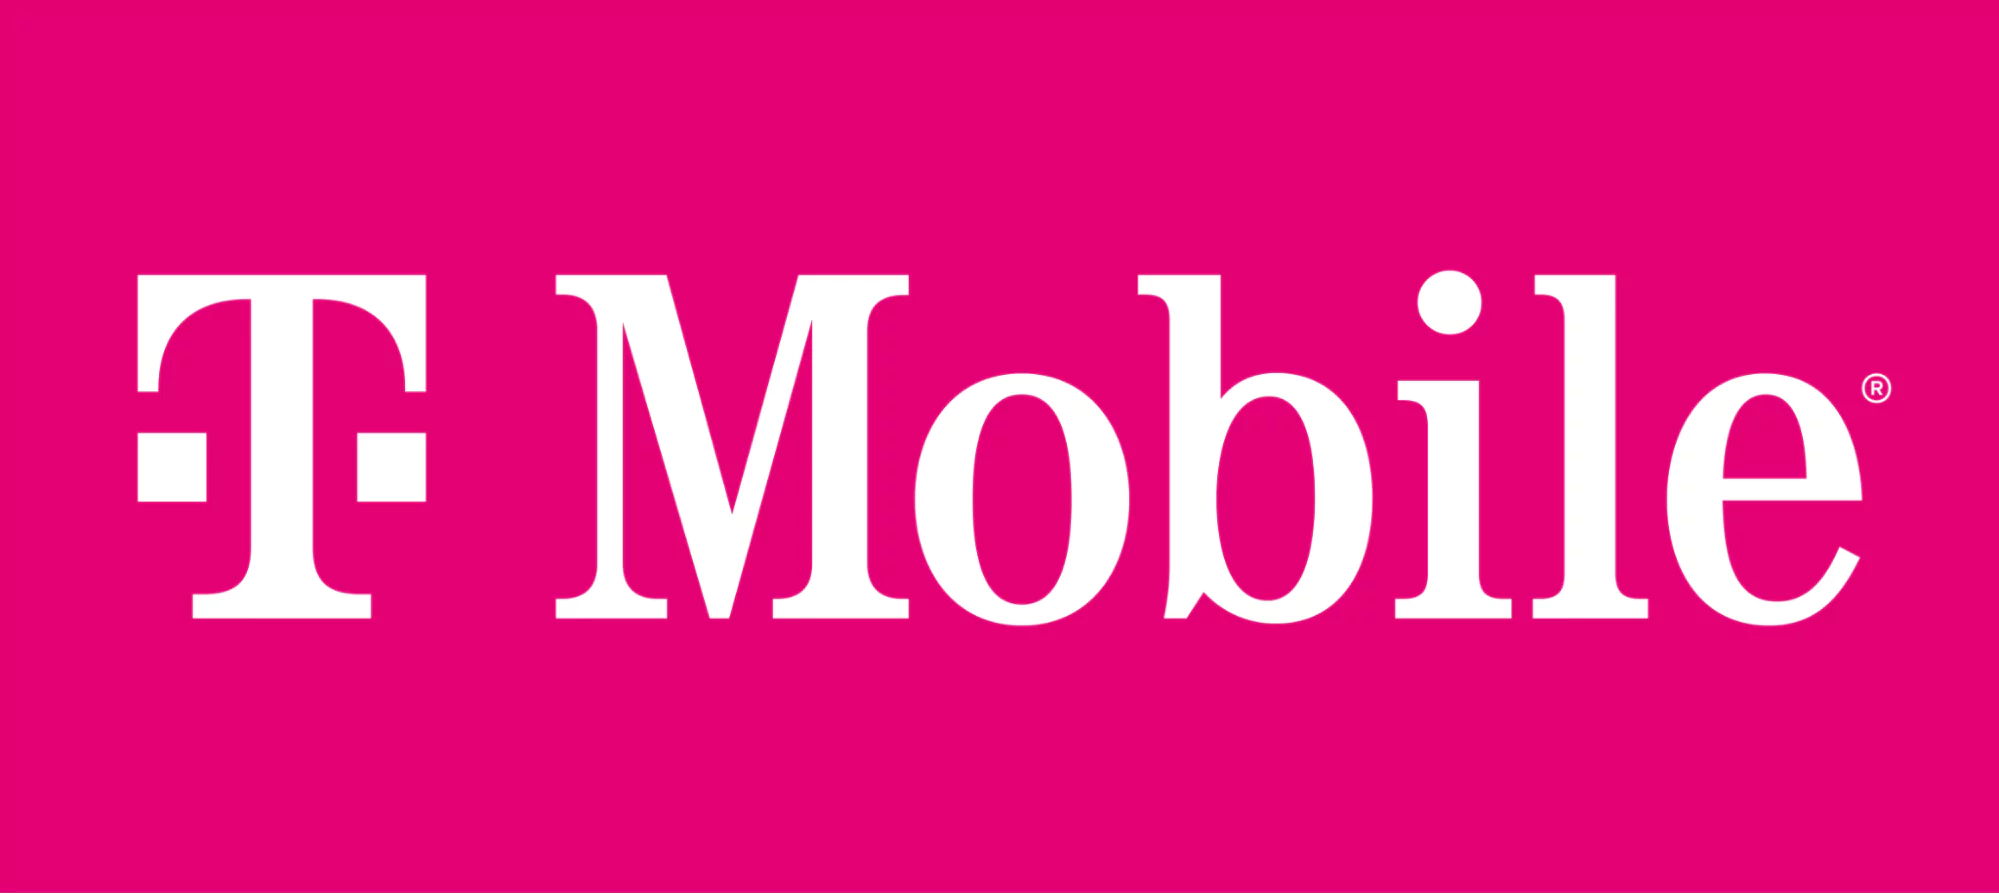 Magenta T-Mobile-logga med den vita texten